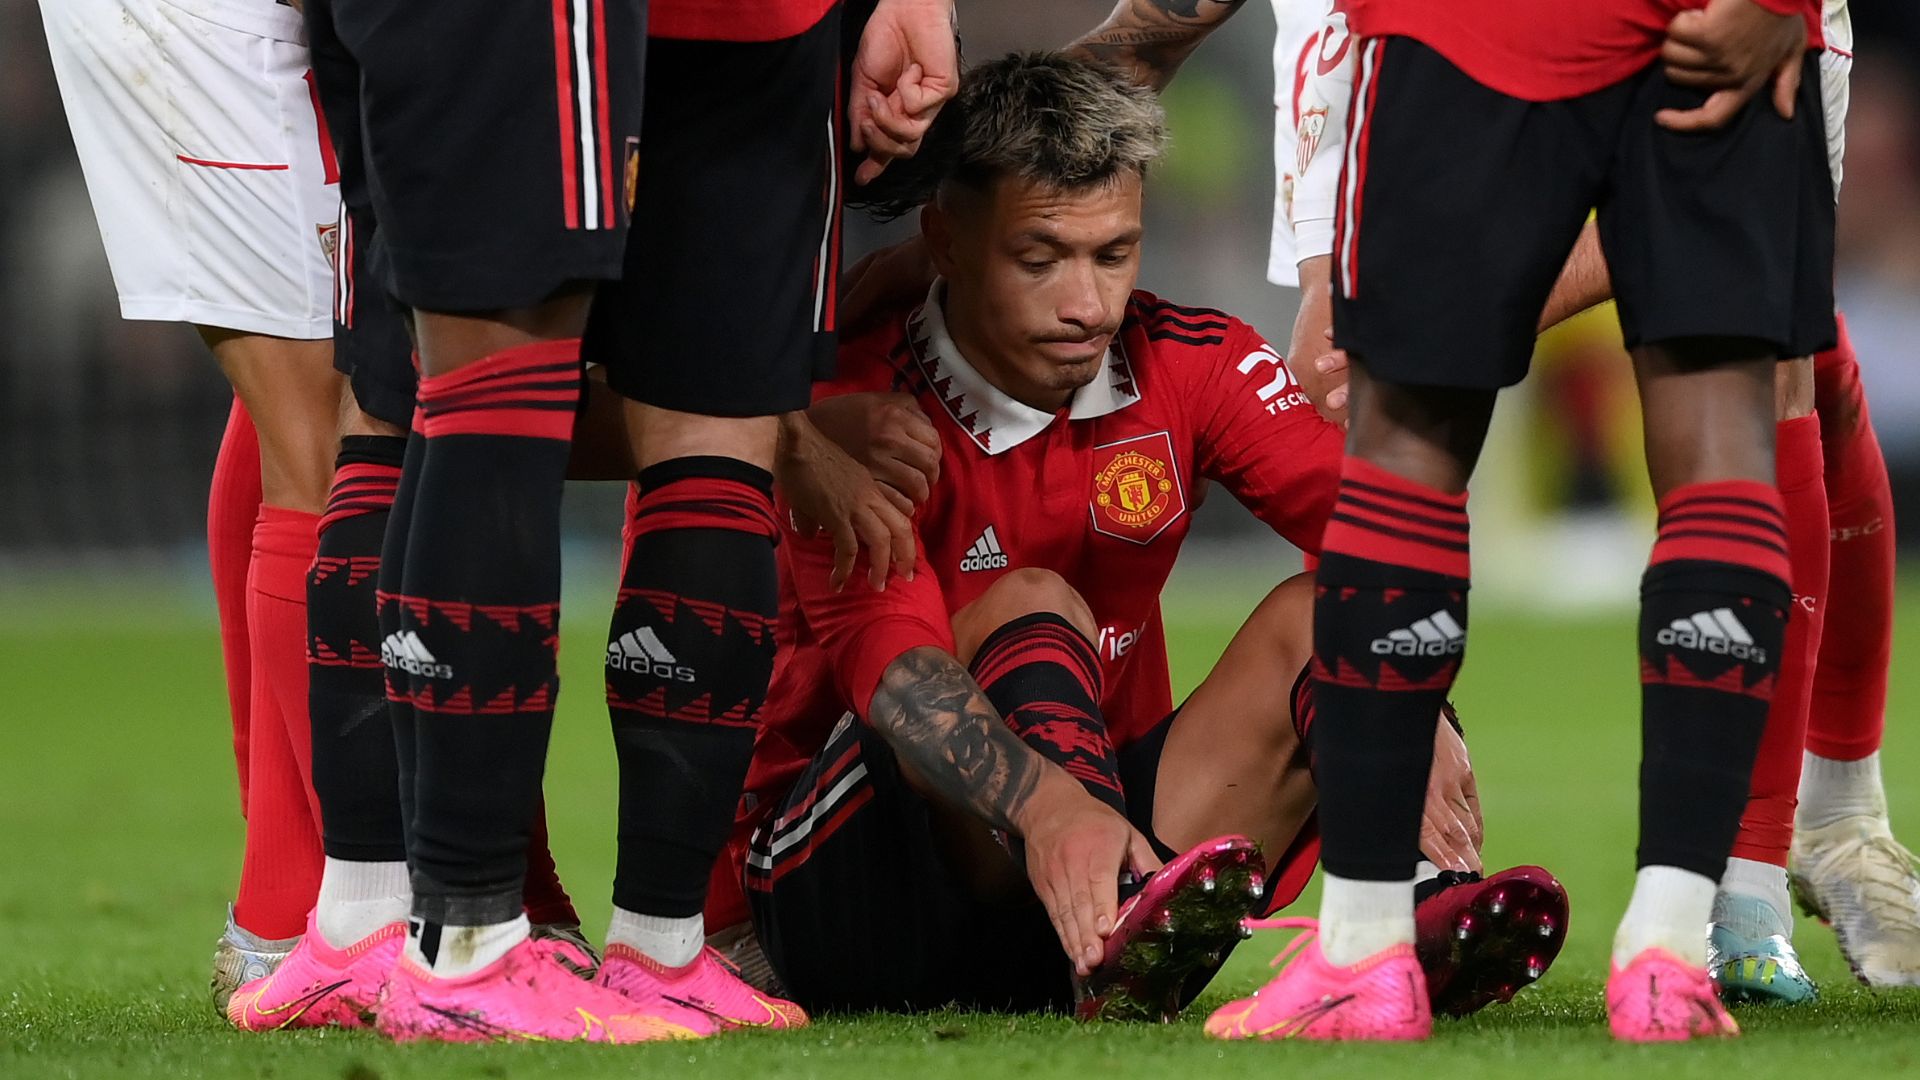 Momento da lesão de Lisandro Martínez, em confronto contra o Sevilla (Crédito: Getty Images)